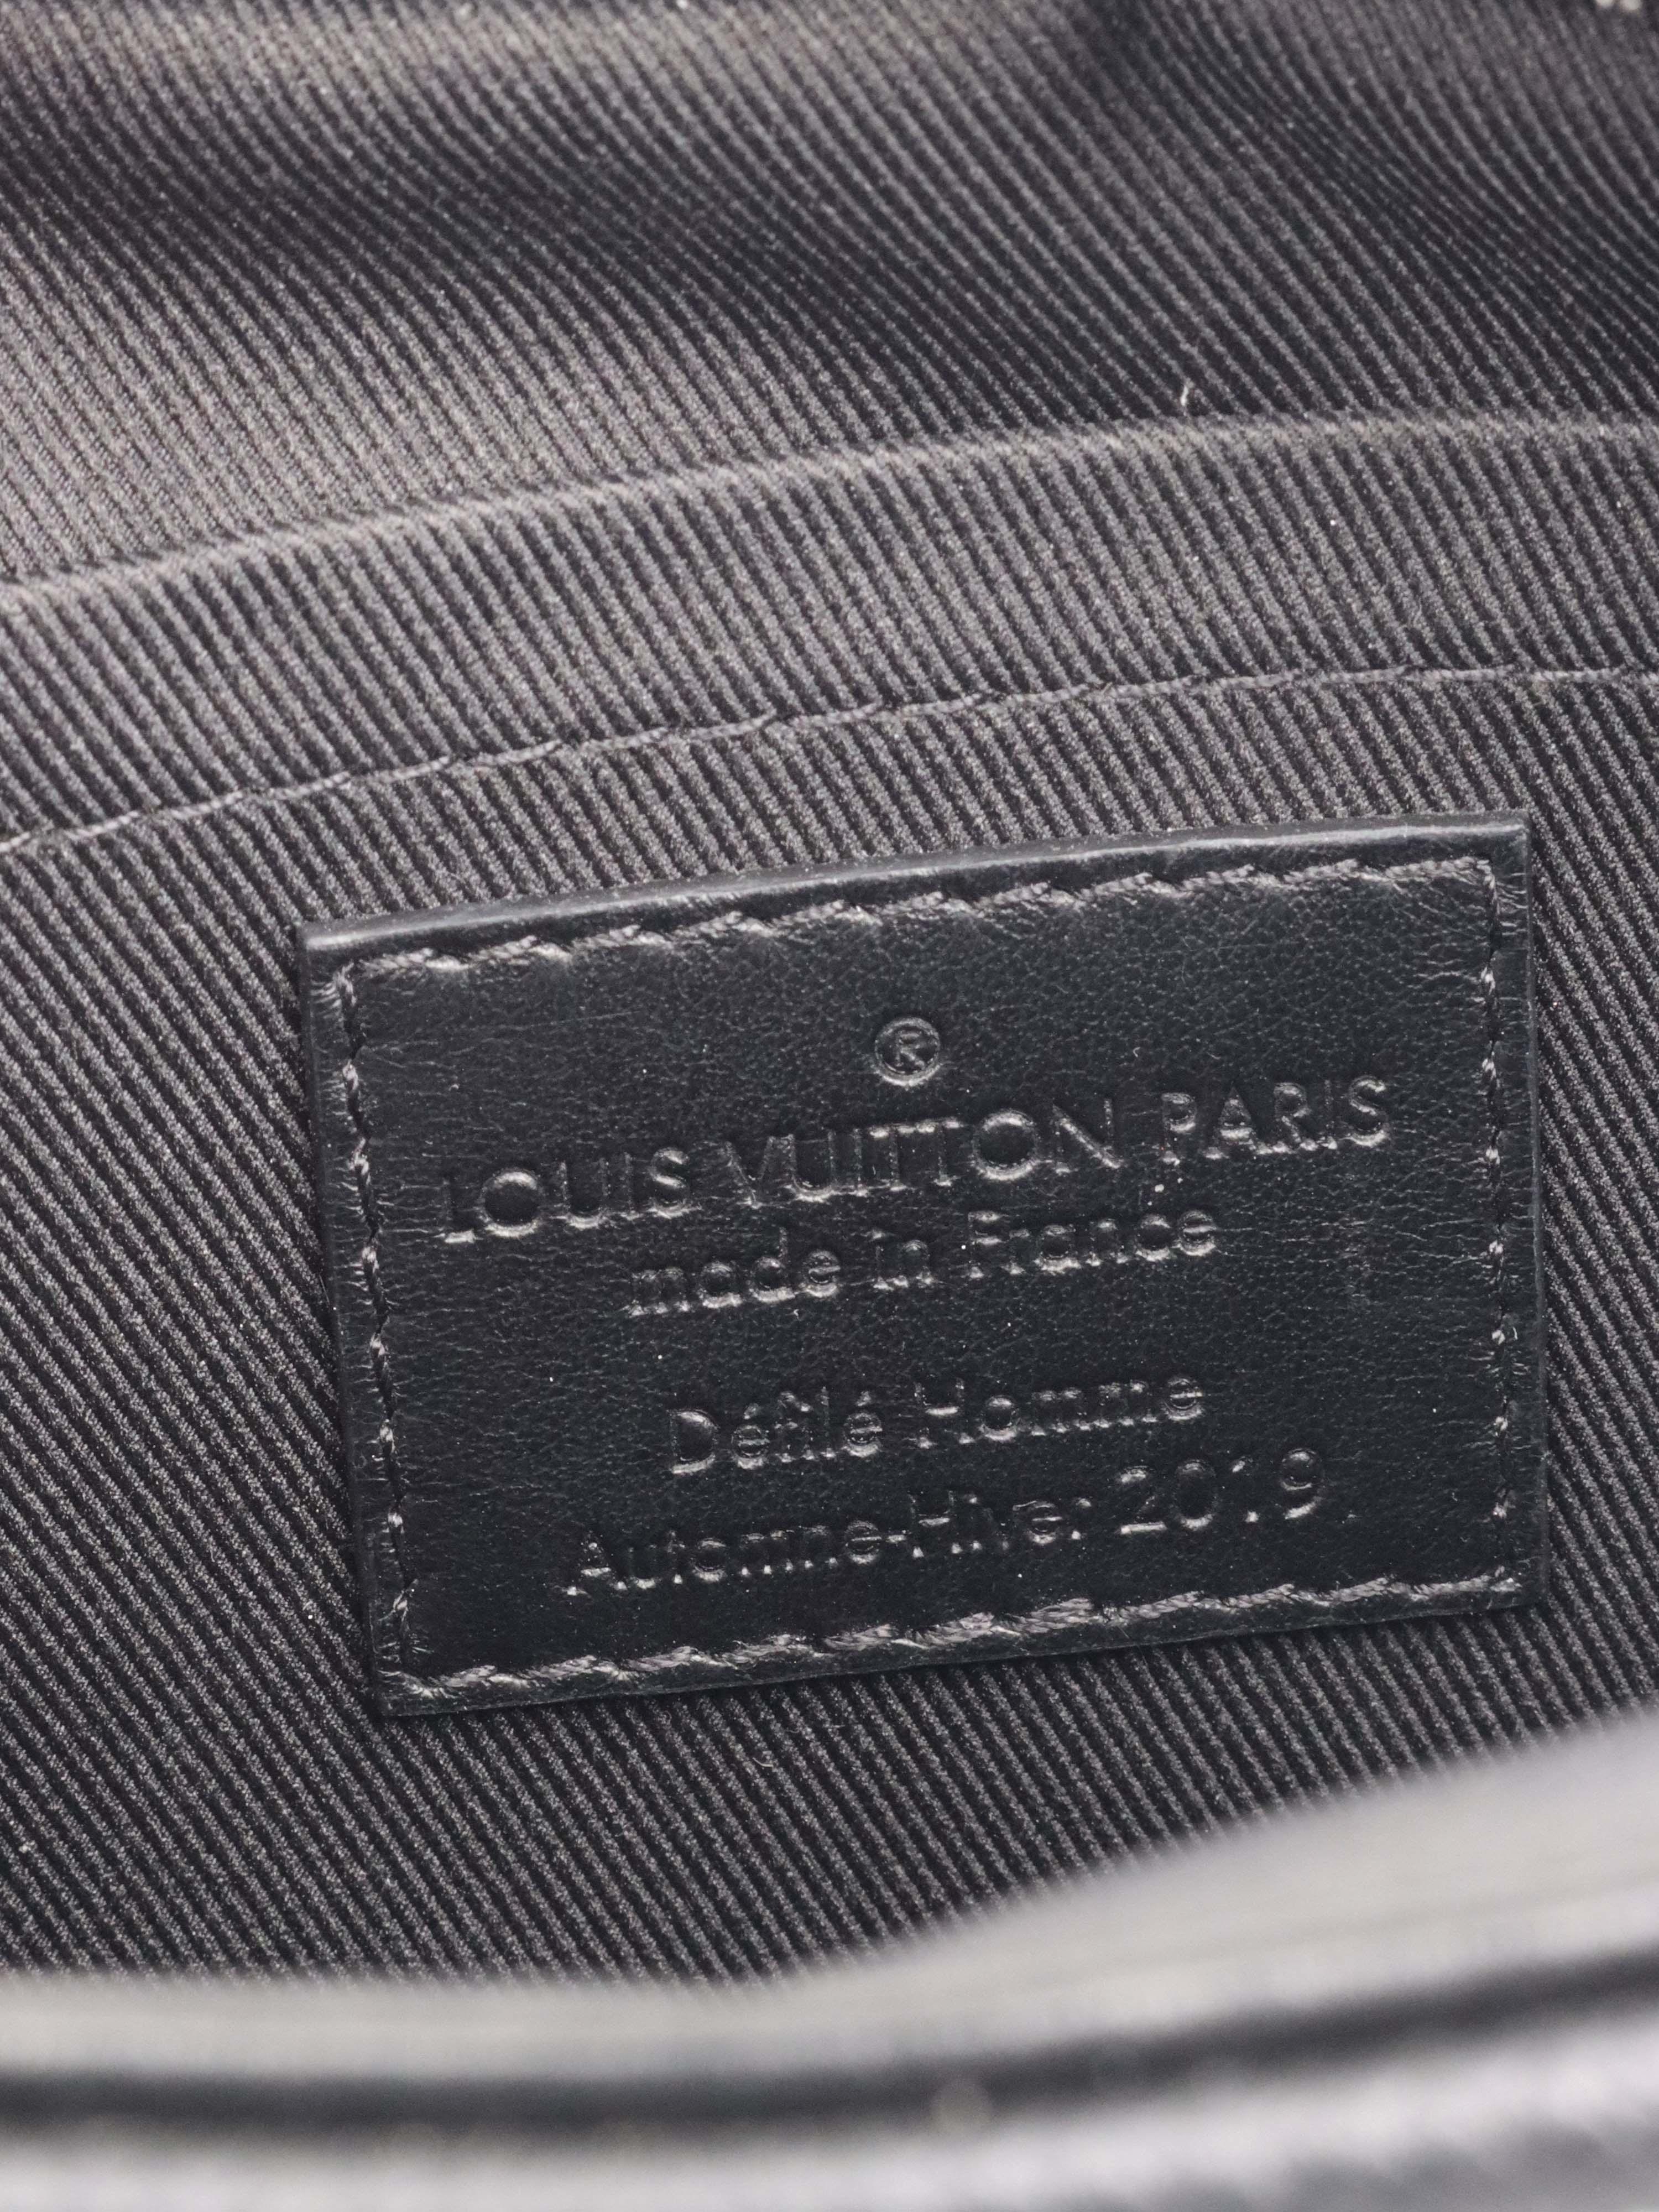 Louis Vuitton Automne-Hive